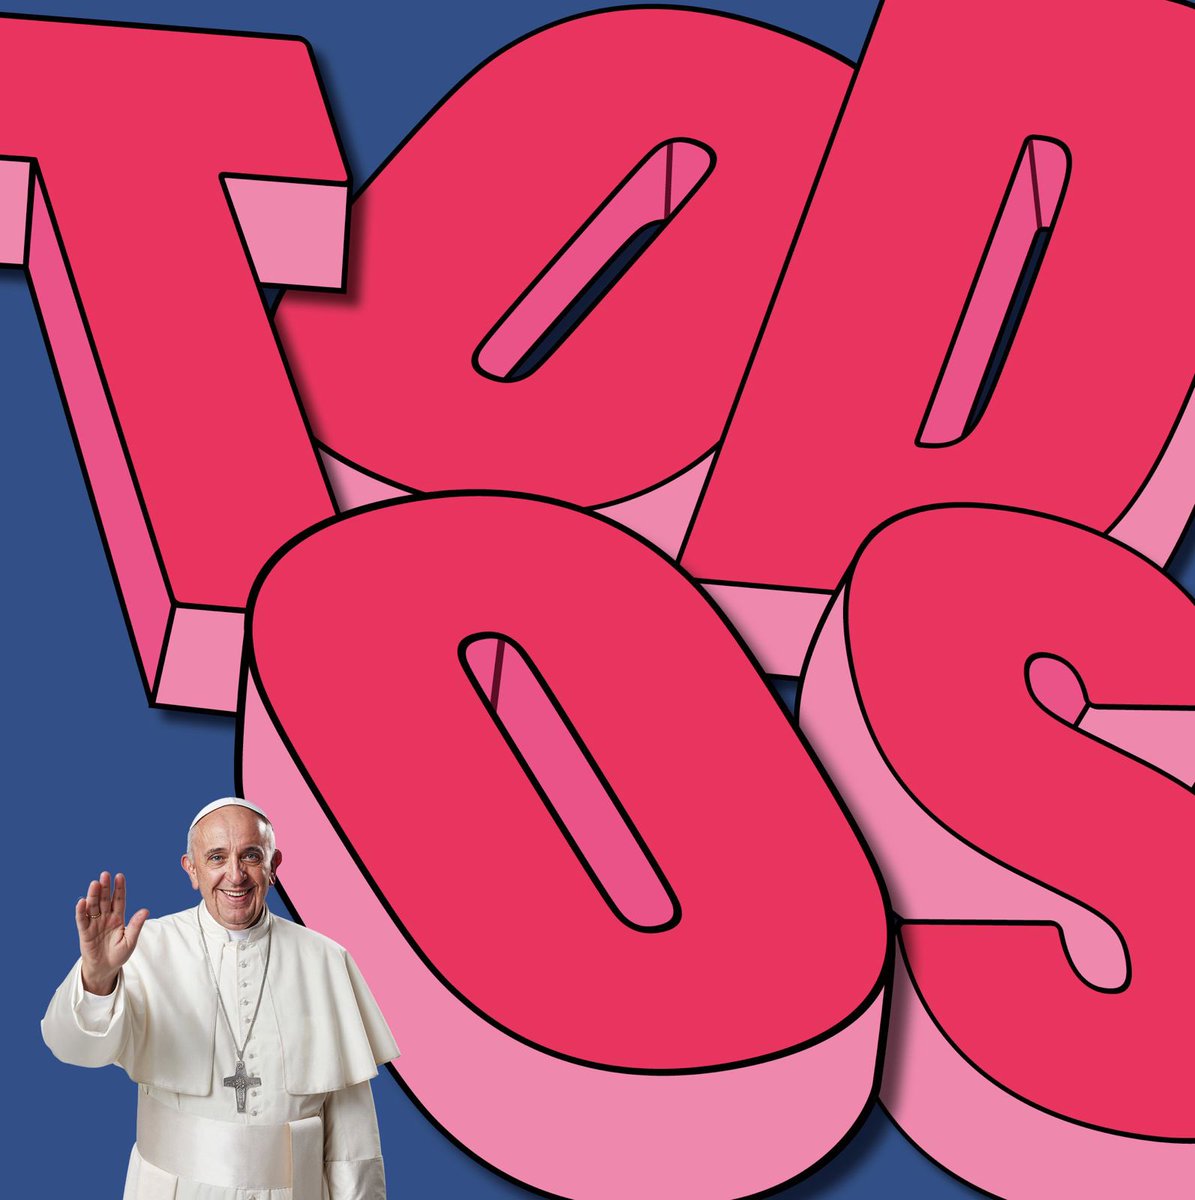 TODOS @Pontifex_es